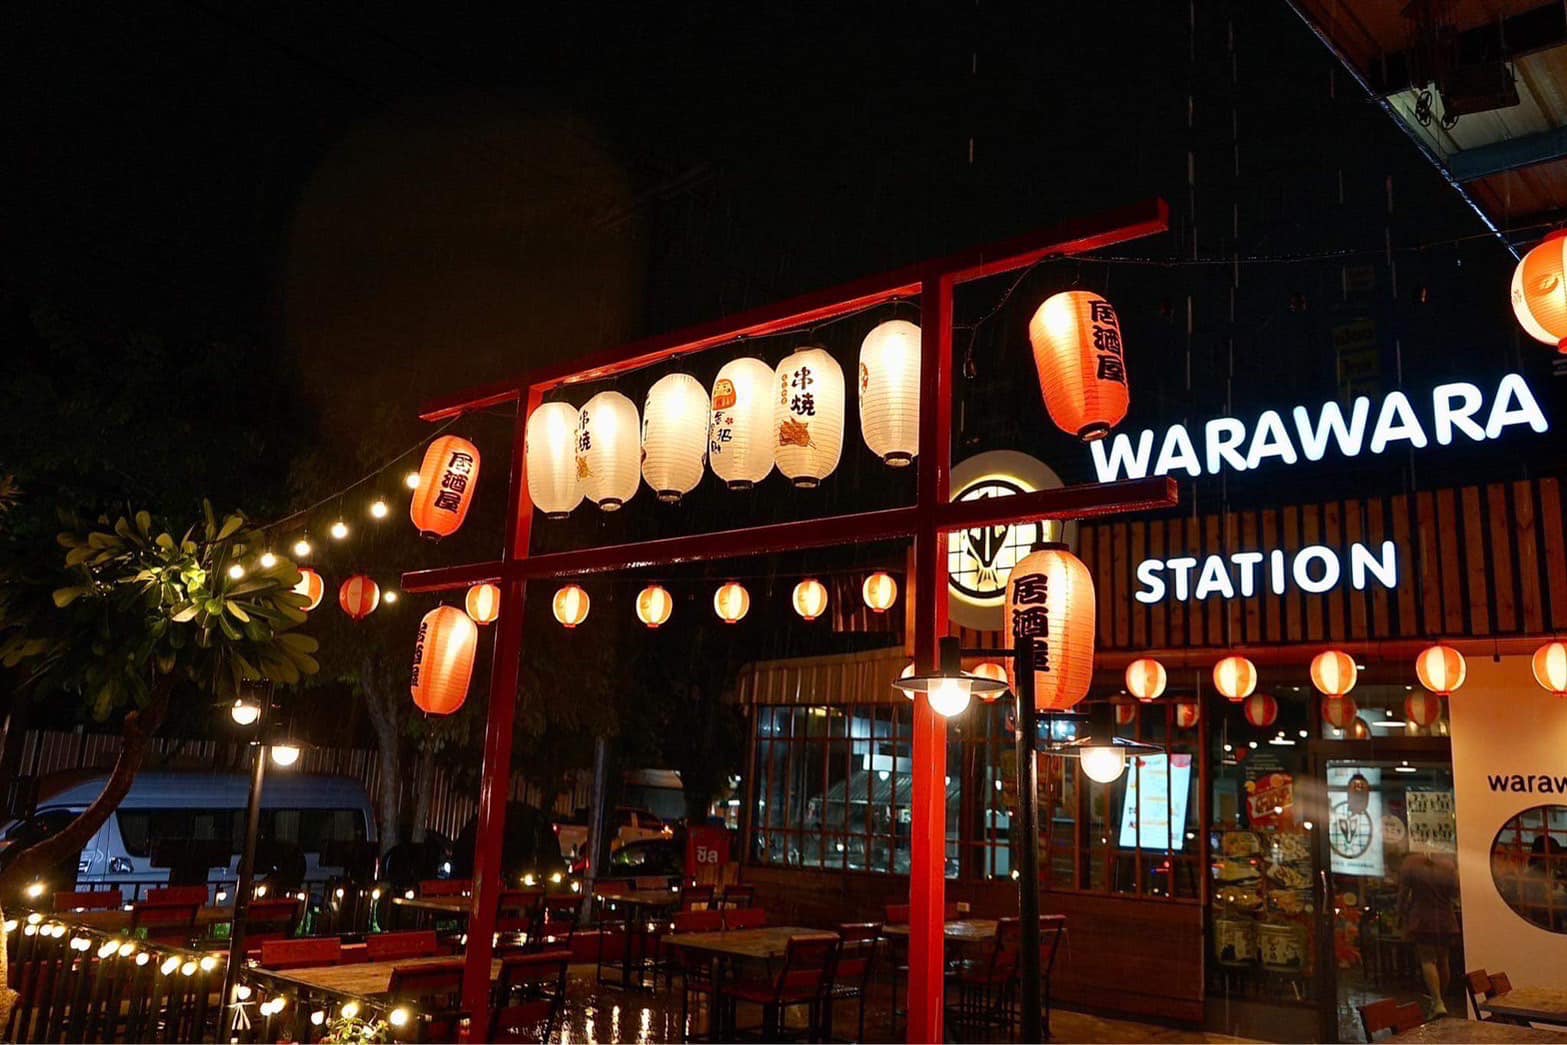 Warawara Station (Warawara Station) : กรุงเทพมหานคร (Bangkok)